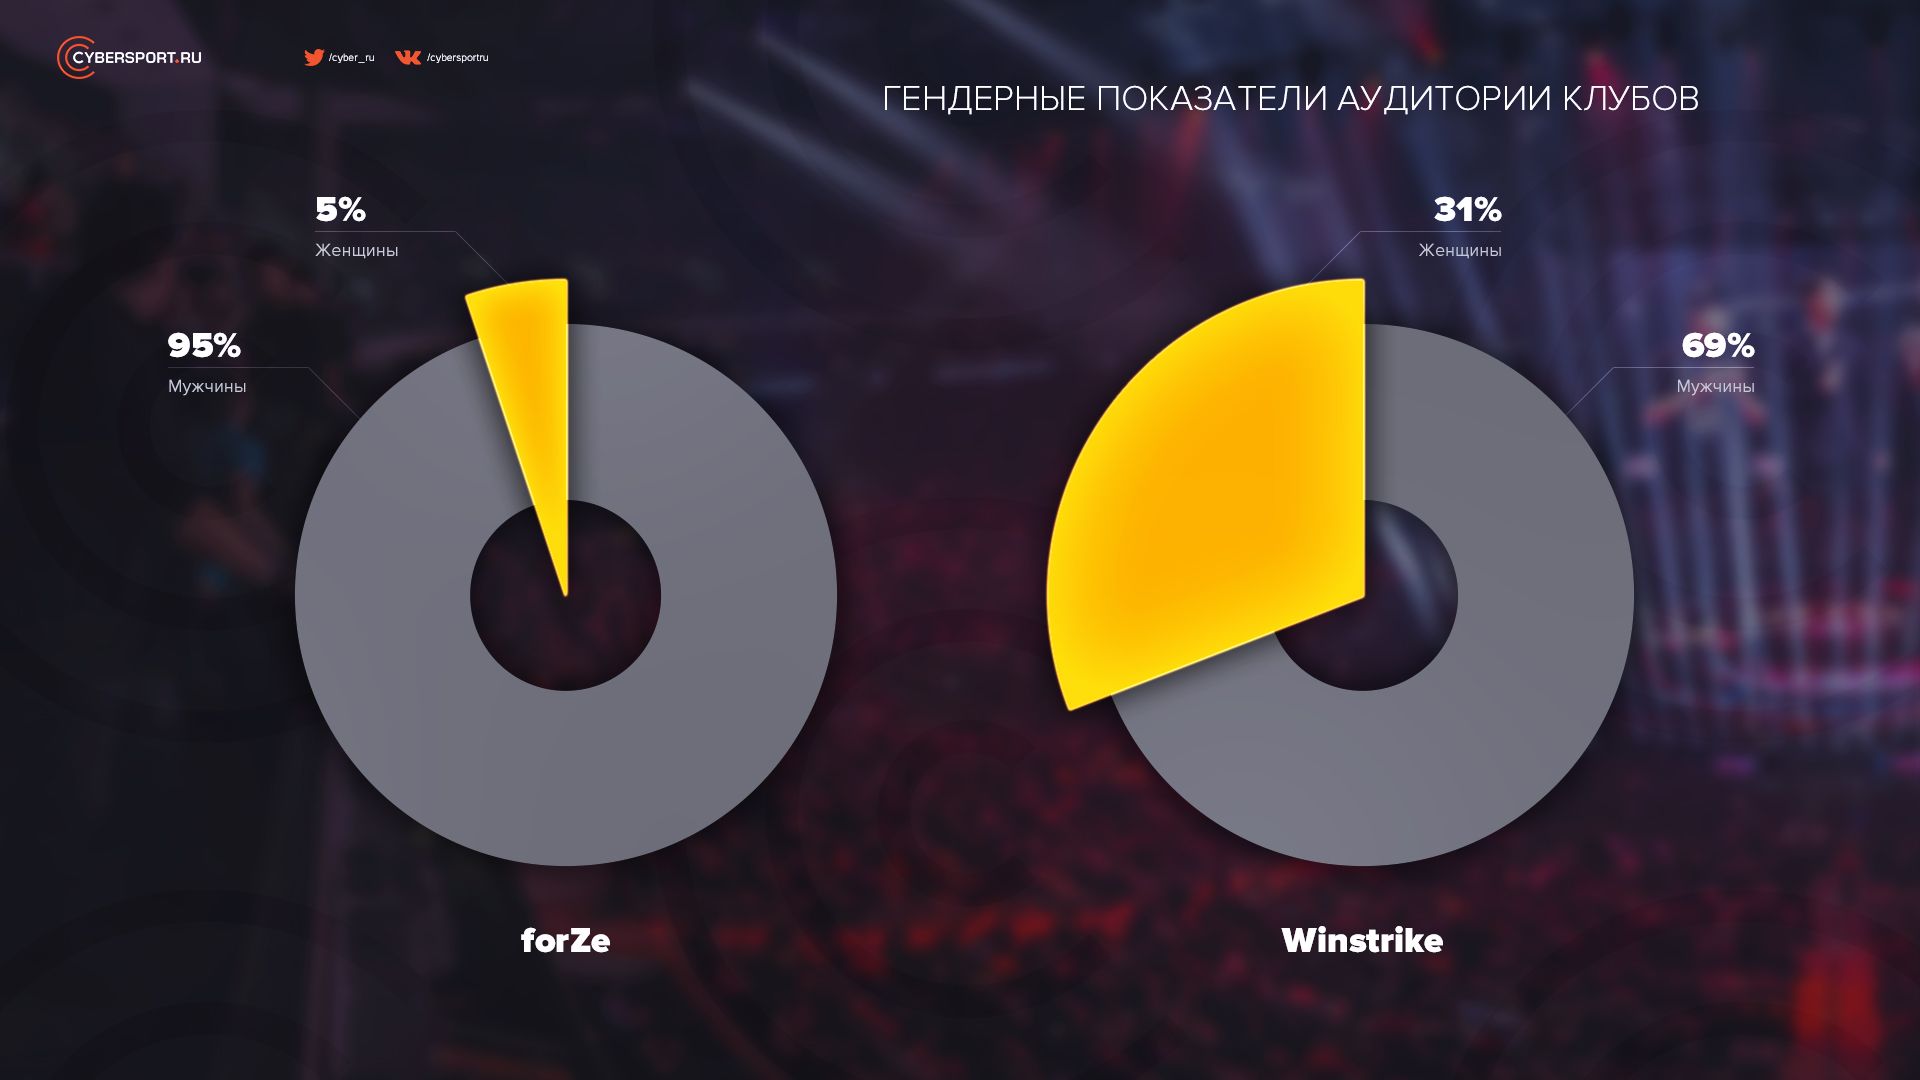 У forZe наибольший процент мужской аудитории среди клубов, а Winstrike &mdash; женской. Данные за 15.06.2020